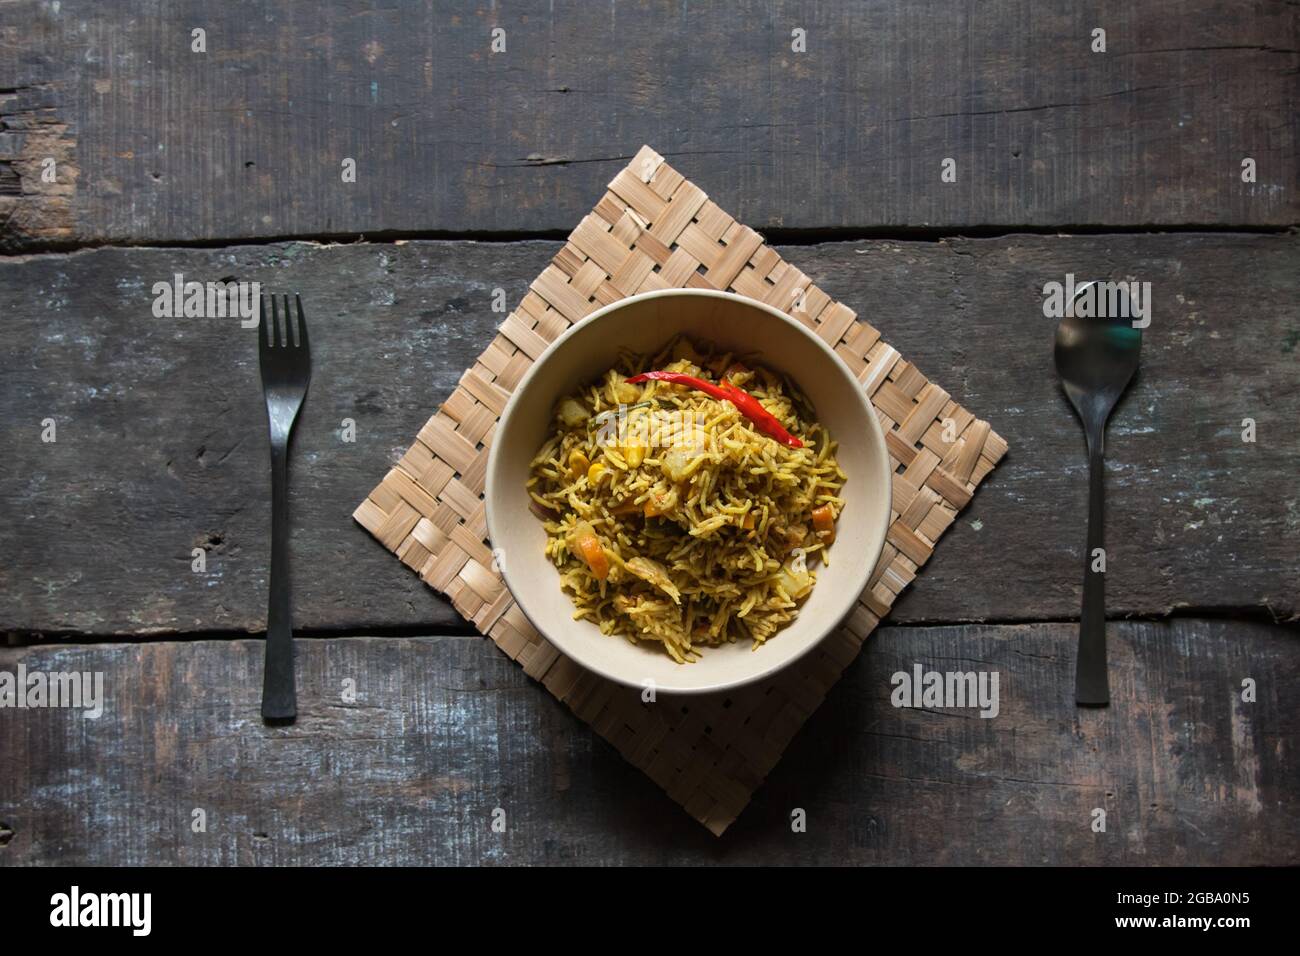 Gemüse tawa Pulao oder Pilau ist ein indisches Essen, das aus Basmati-Reis, Gemüse und einer Mischung aus indischen Gewürzen zubereitet wird. Stockfoto